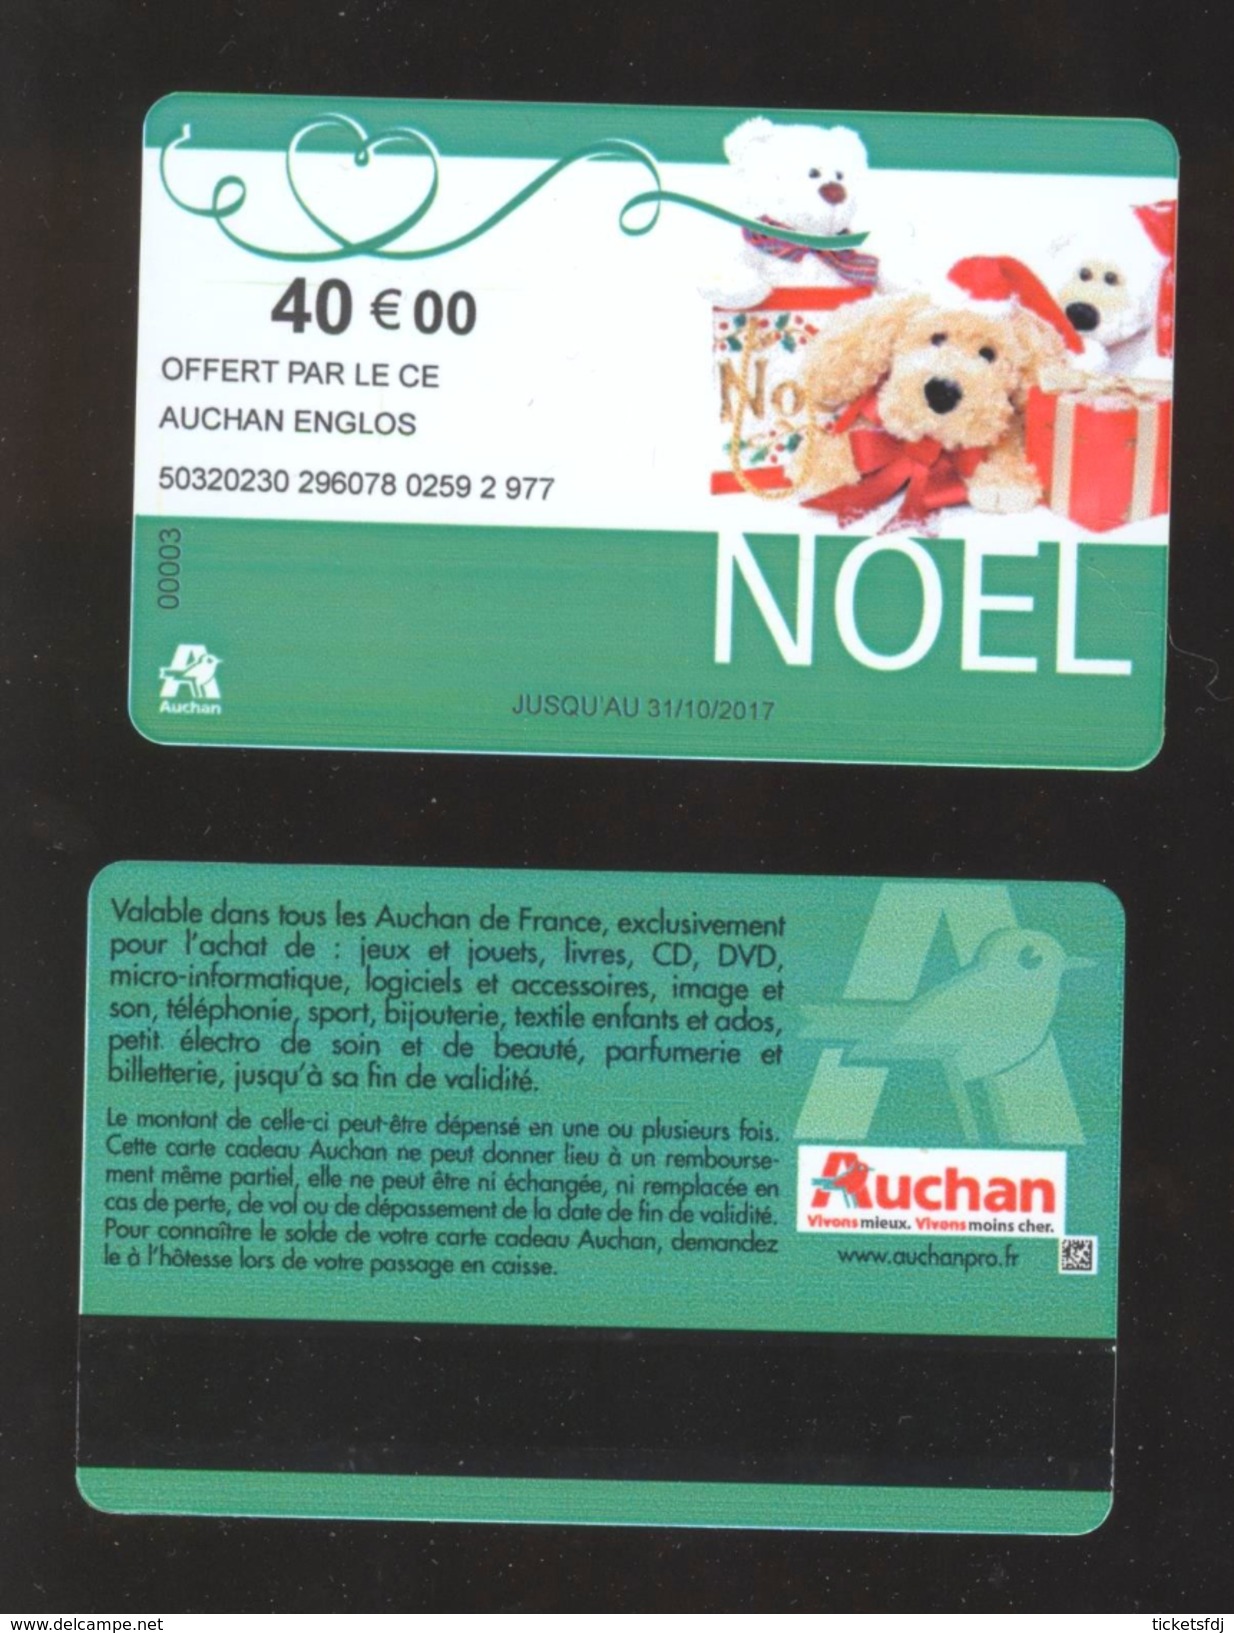 GIFT CARD - Carte Cadeau Auchan - NOEL Vert Clair - Date Limite Au Centre - 40 &euro; - CE AUCHAN ENGLOS - Cartes Cadeaux